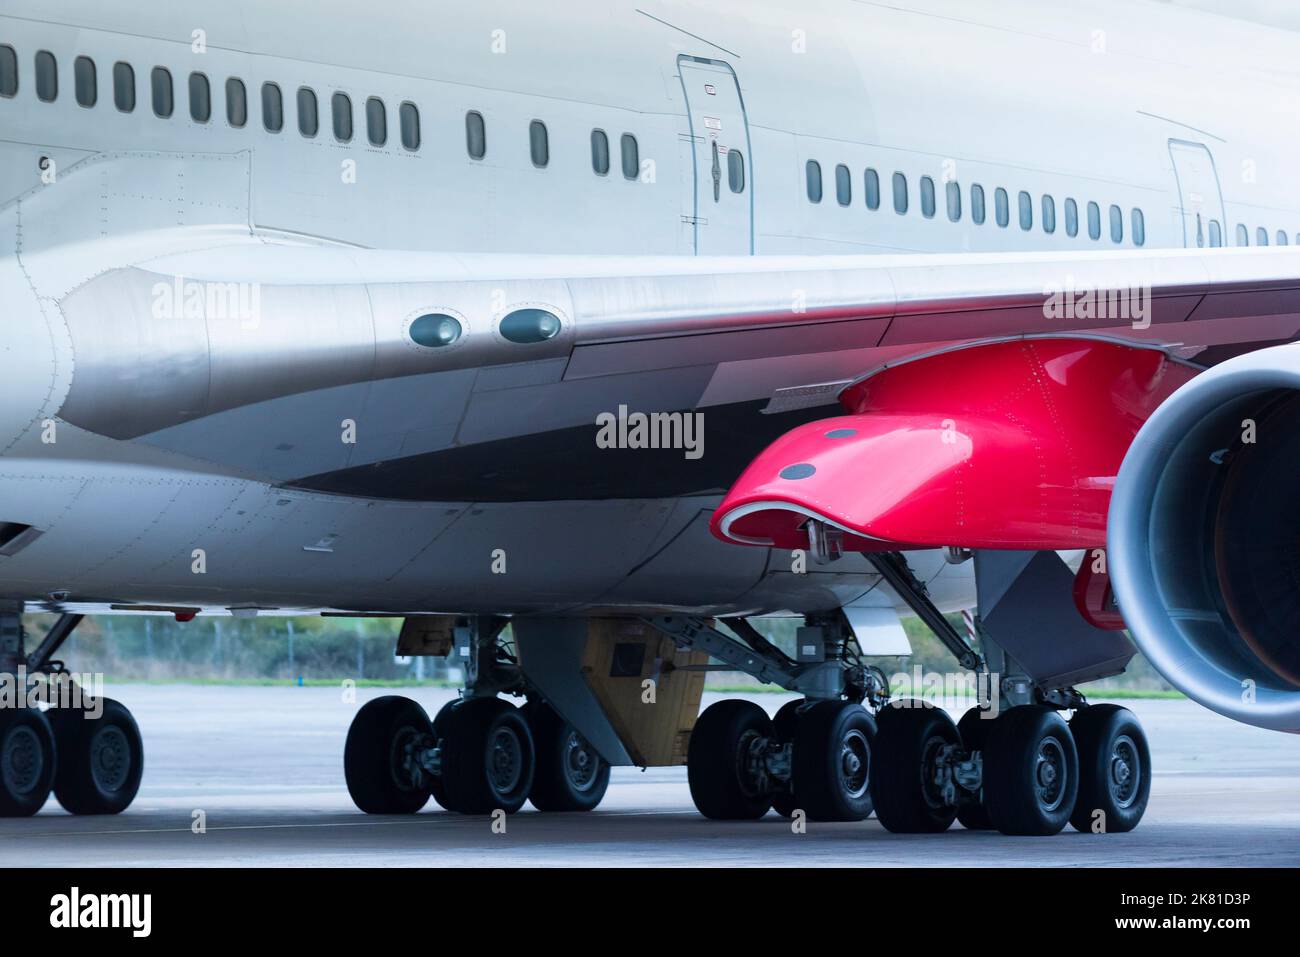 Nahaufnahme des roten Startmasten unter dem Flügel der Virgin Orbit, Cosmic Girl, einer 747-400, die zu einer Raketenstartplattform Taxii umgebaut wurde Stockfoto